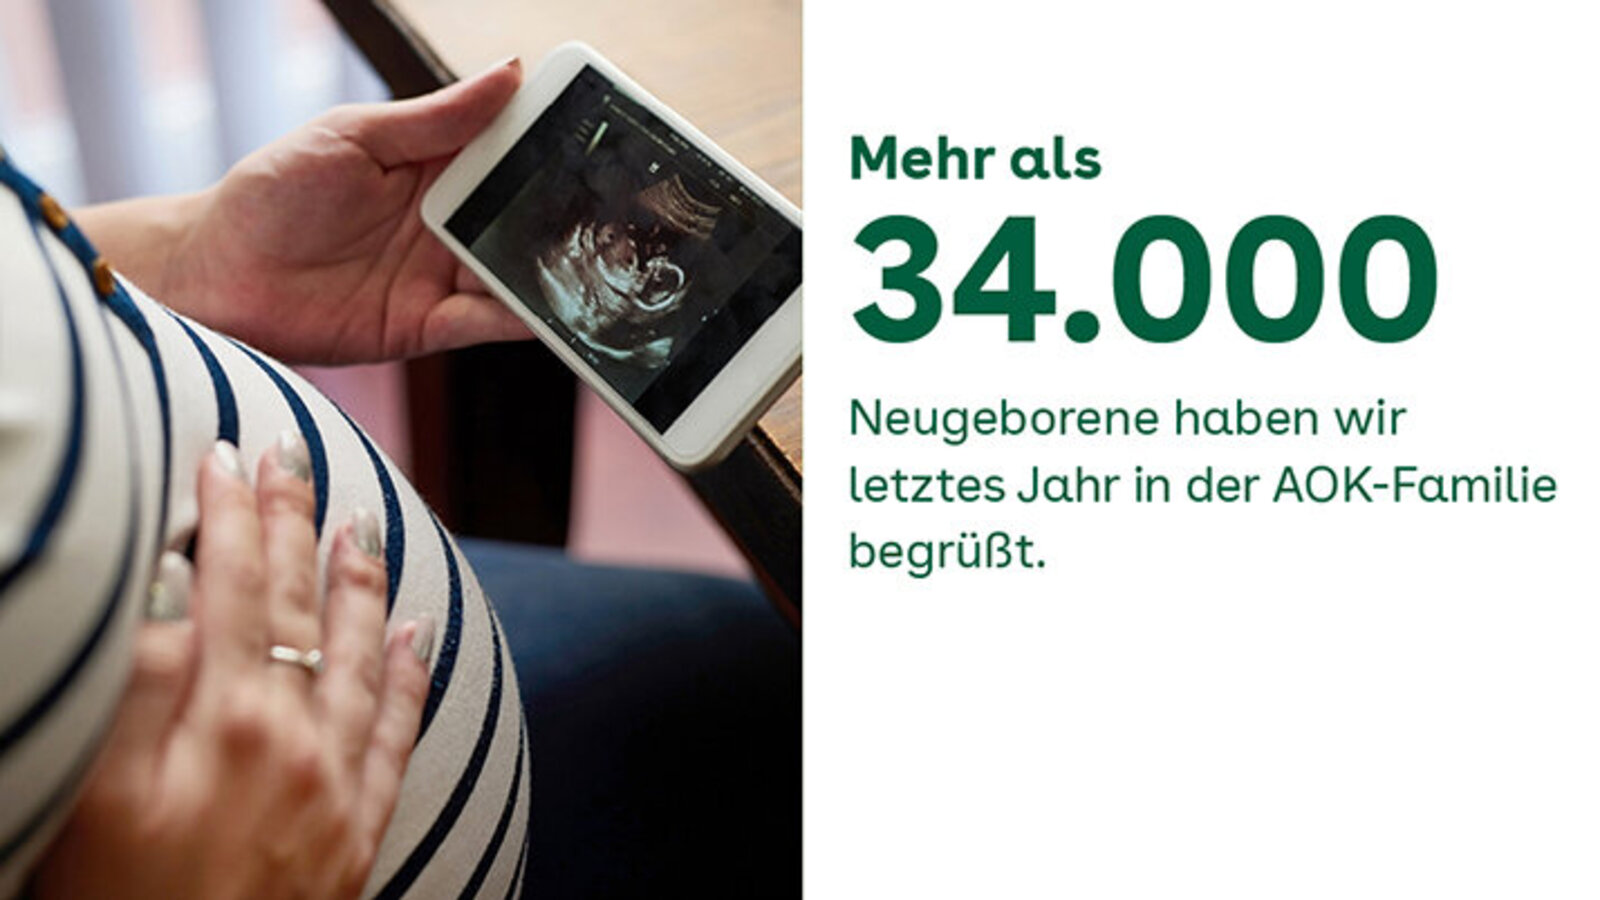 Mehr als 34.000 Neugeborene haben wir letztes Jahr in der AOK-Familie begrüßt.